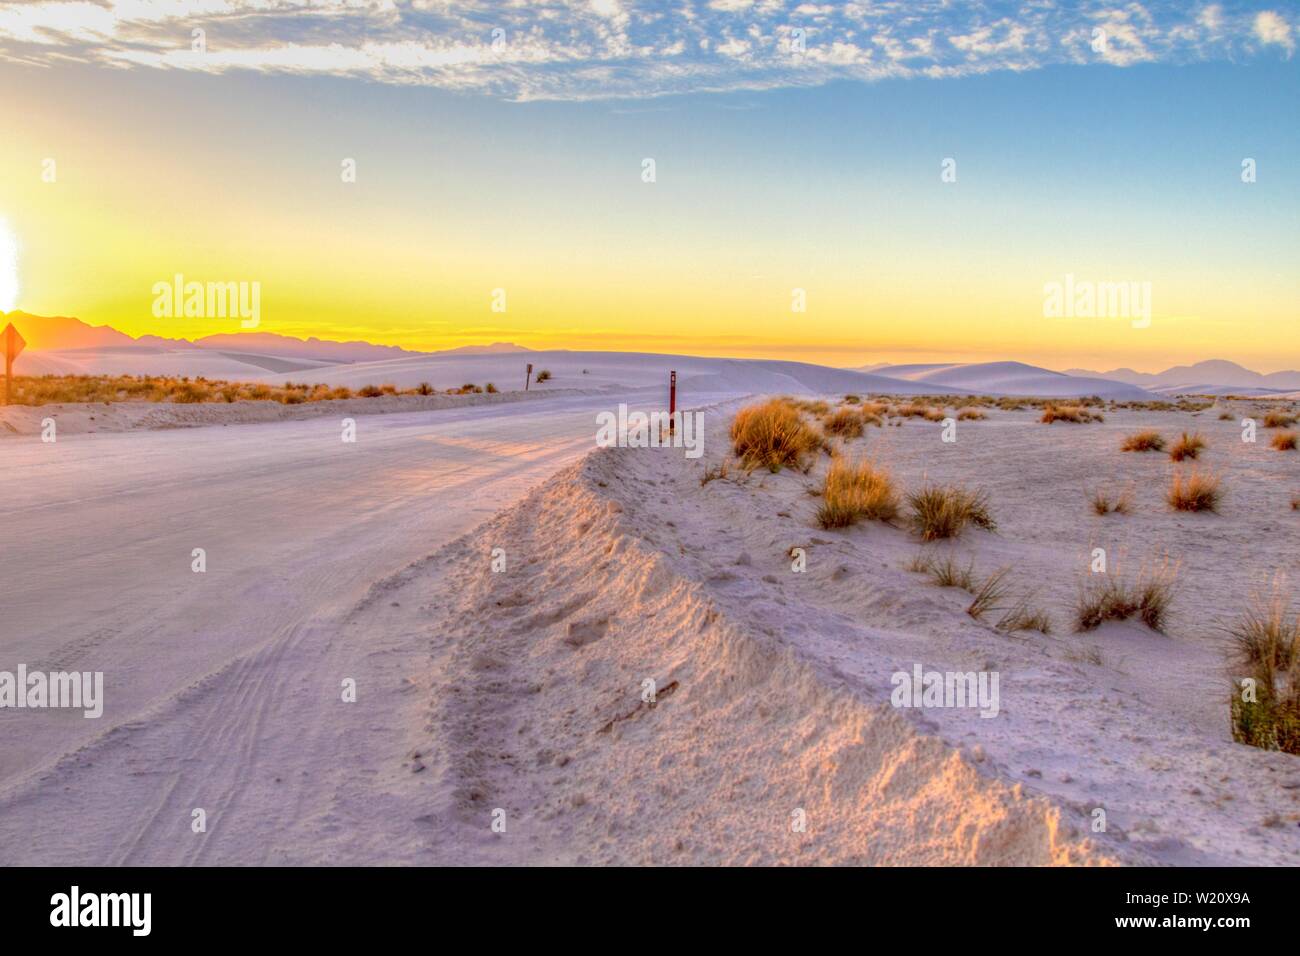 Road Trip In Die Wüste. Wunderschöner Sonnenuntergang in der Wüste mit abgelegener Landstraße, die sich durch die Sanddünen des White Sands National Monument in New Mexico schlängelt Stockfoto